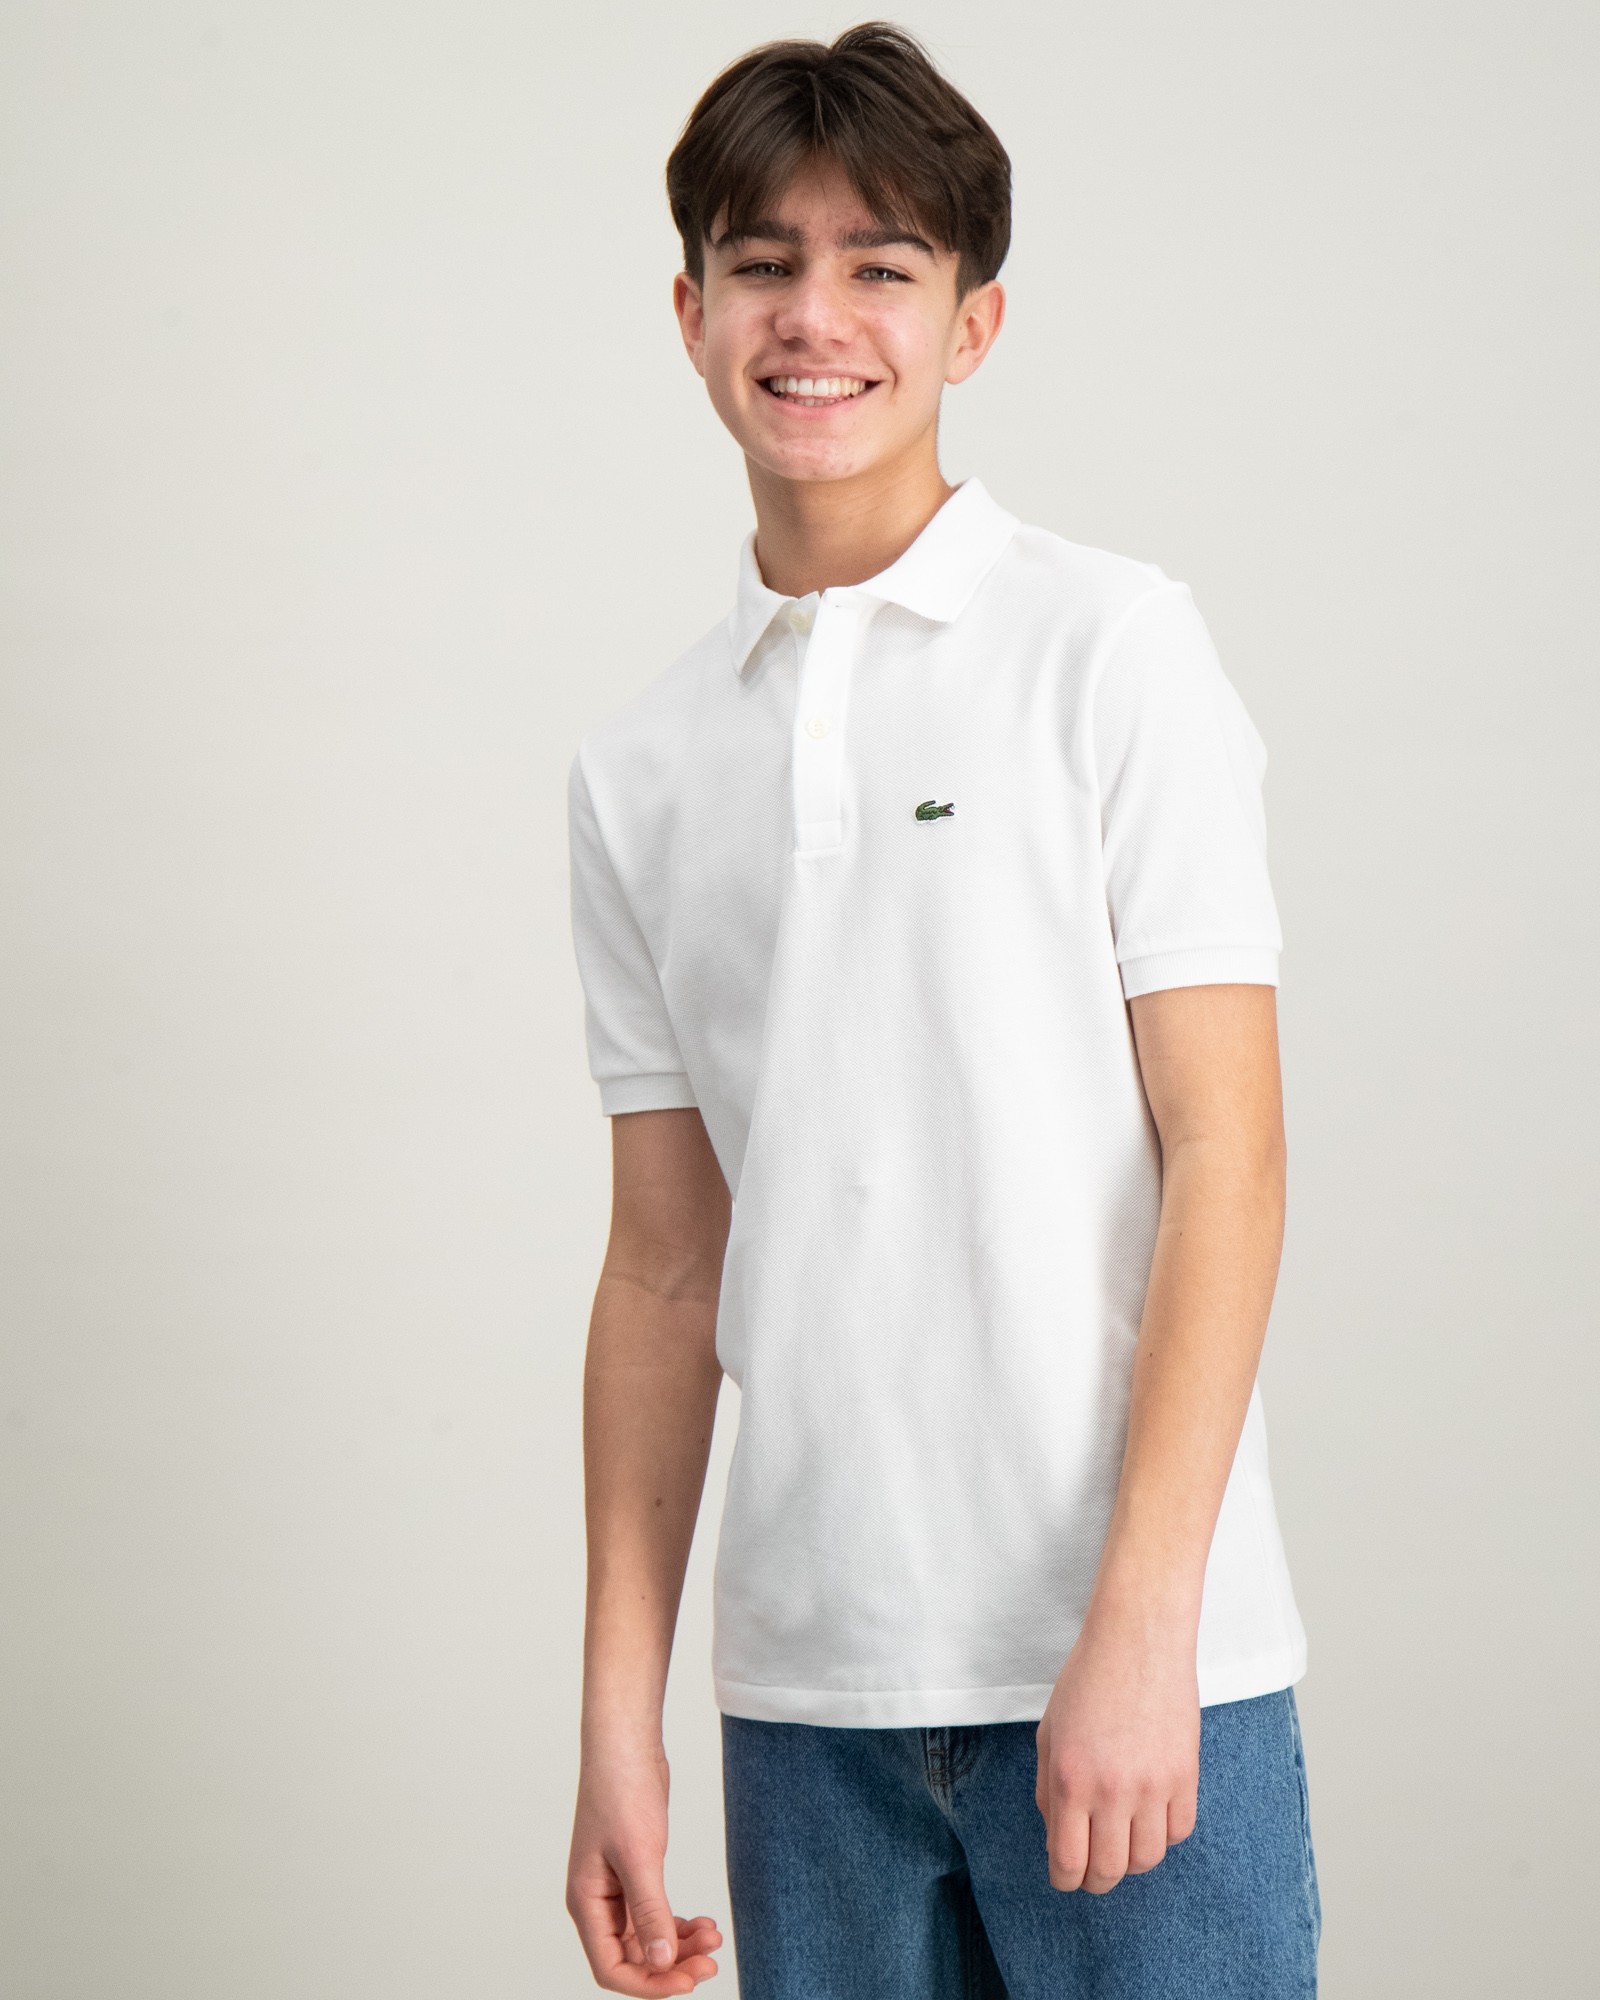 Weiß Polo für Jungen | Kids Brand Store